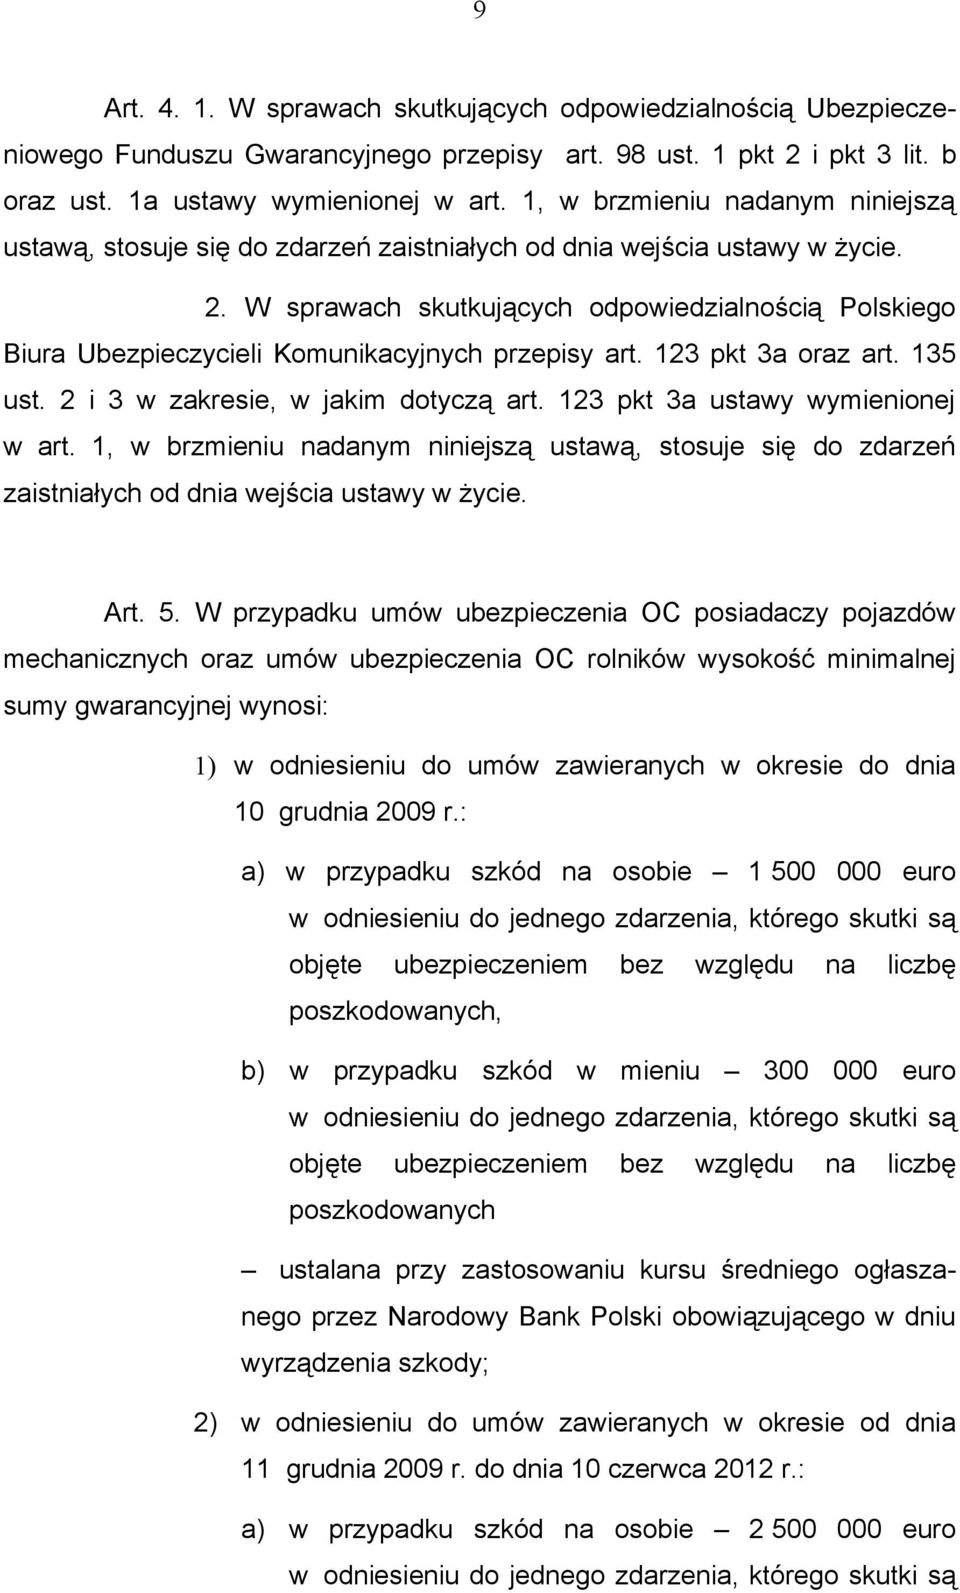 W sprawach skutkujących odpowiedzialnością Polskiego Biura Ubezpieczycieli Komunikacyjnych przepisy art. 123 pkt 3a oraz art. 135 ust. 2 i 3 w zakresie, w jakim dotyczą art.